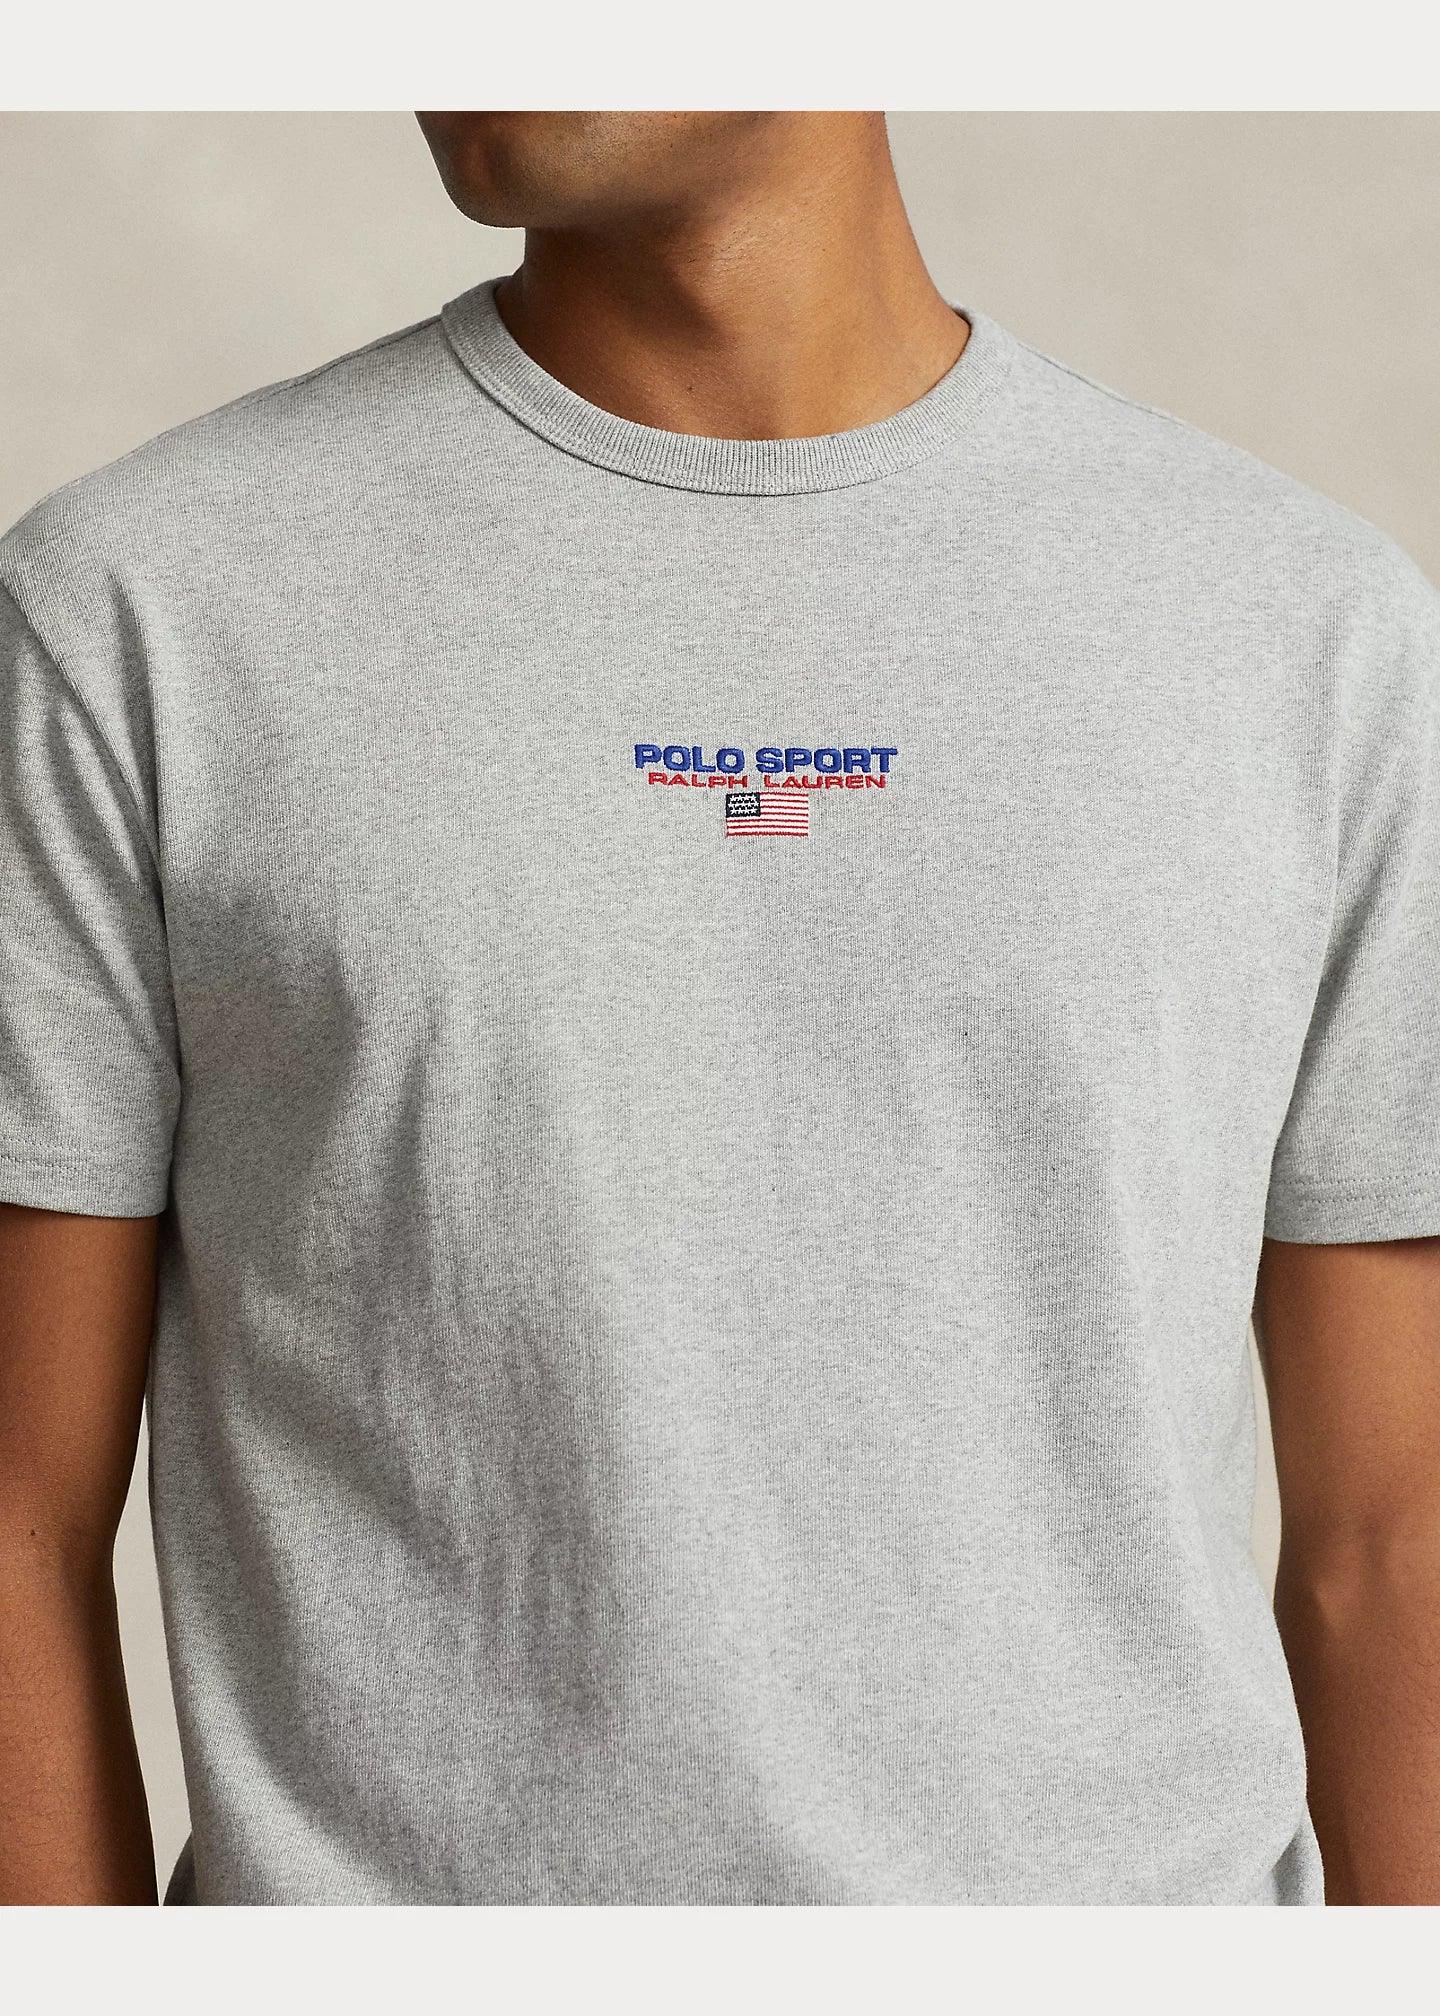 Camiseta Polo Ralph Lauren Classic Fit de punto Polo Sport Gris - ECRU